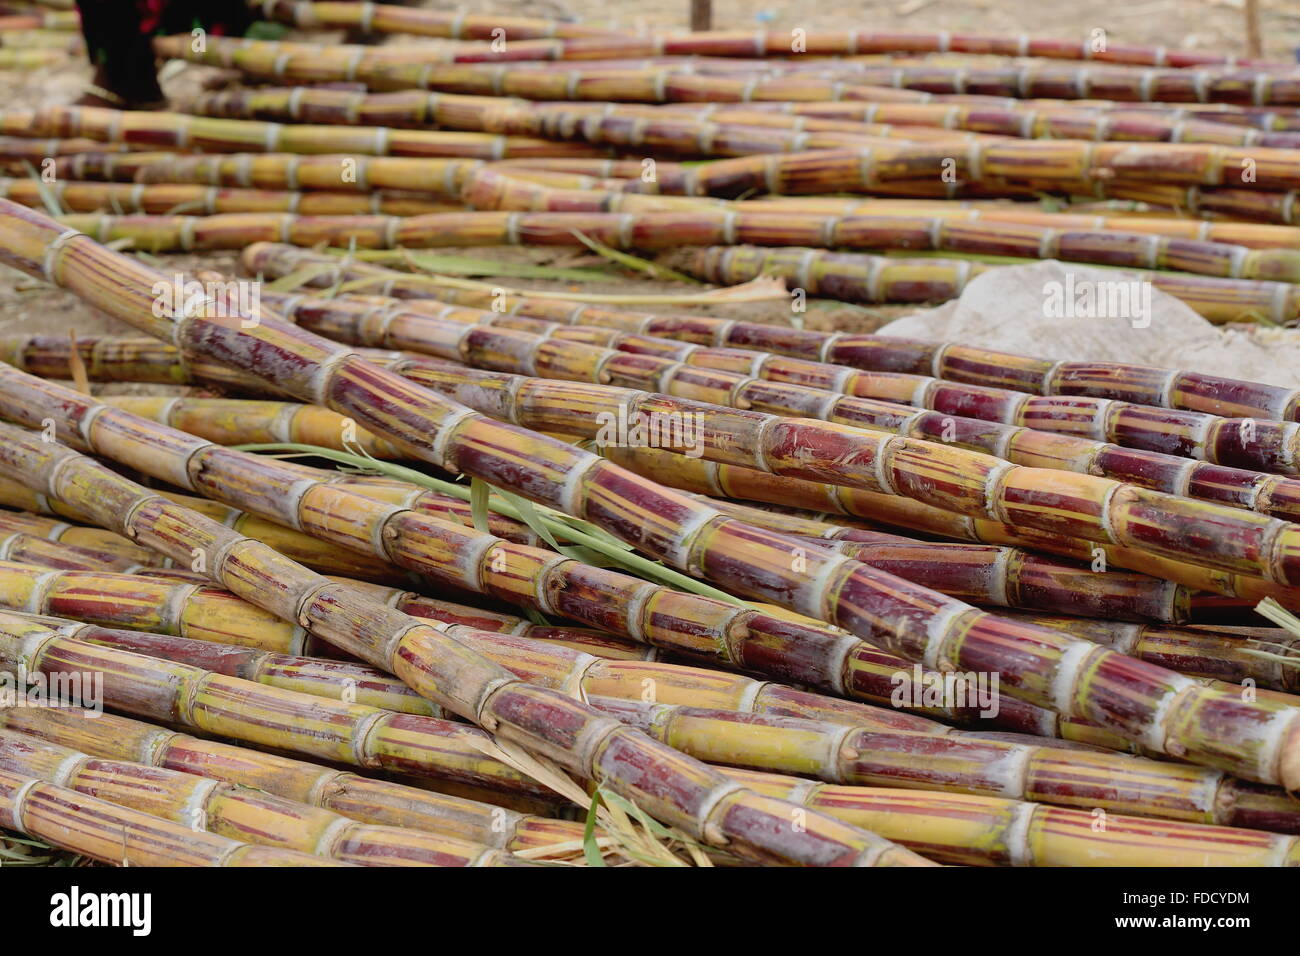 Canne da zucchero impostato su una fase di stallo sul pavimento per la vendita nel mercato di domenica dove il Oromo-Amhara-lontano i popoli si incontrano. Senbete-Ethiopia Foto Stock